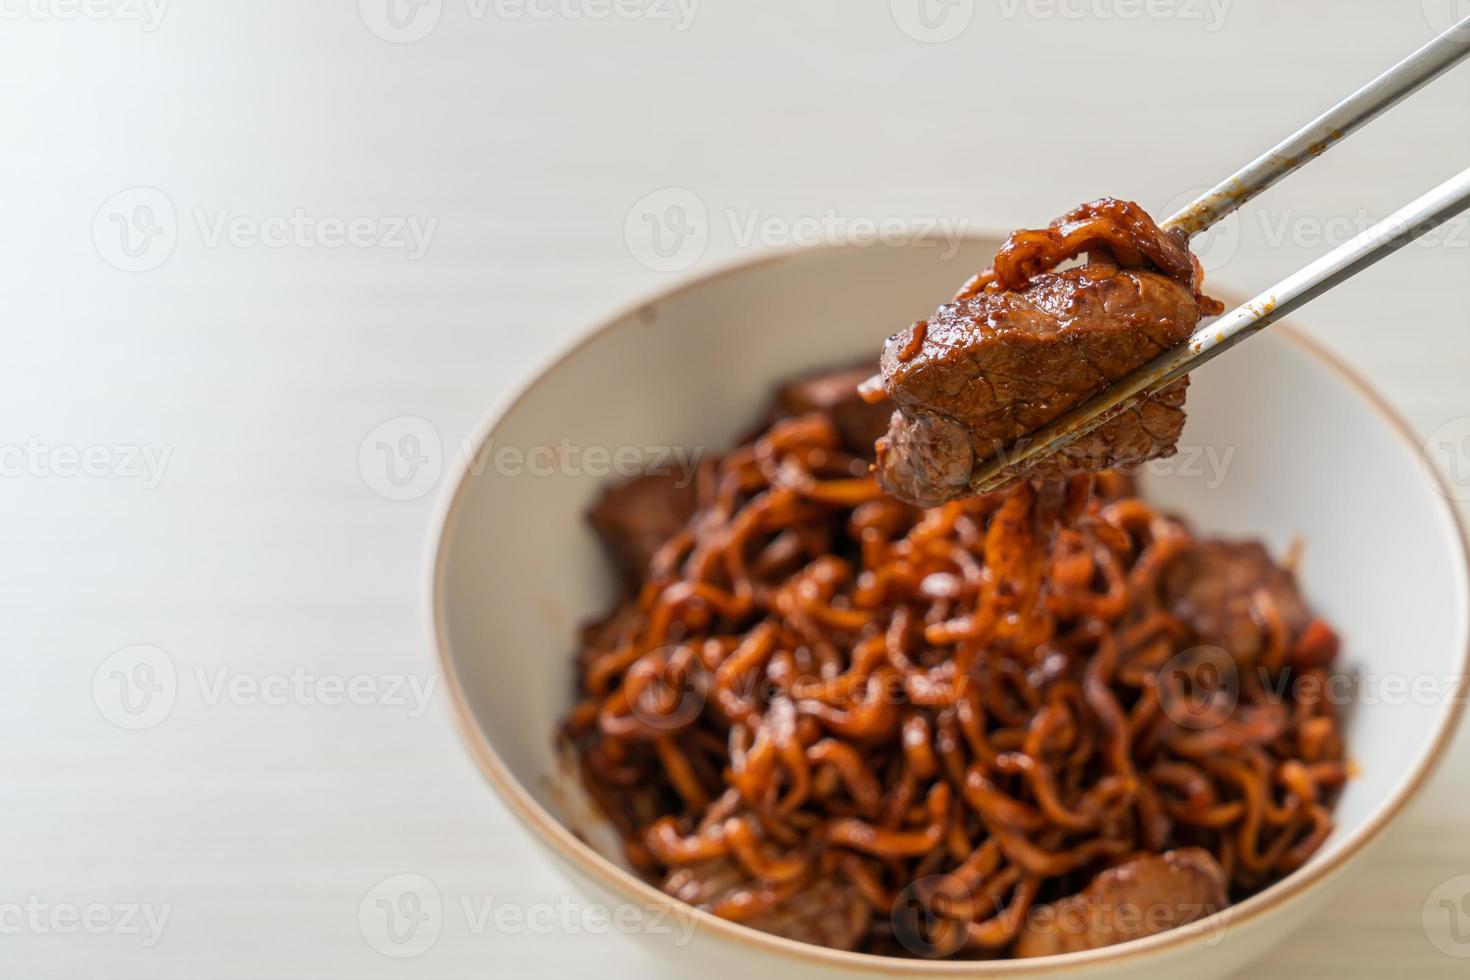 jjapaguri ou chapaguri, macarrão picante de feijão preto coreano com carne bovina foto